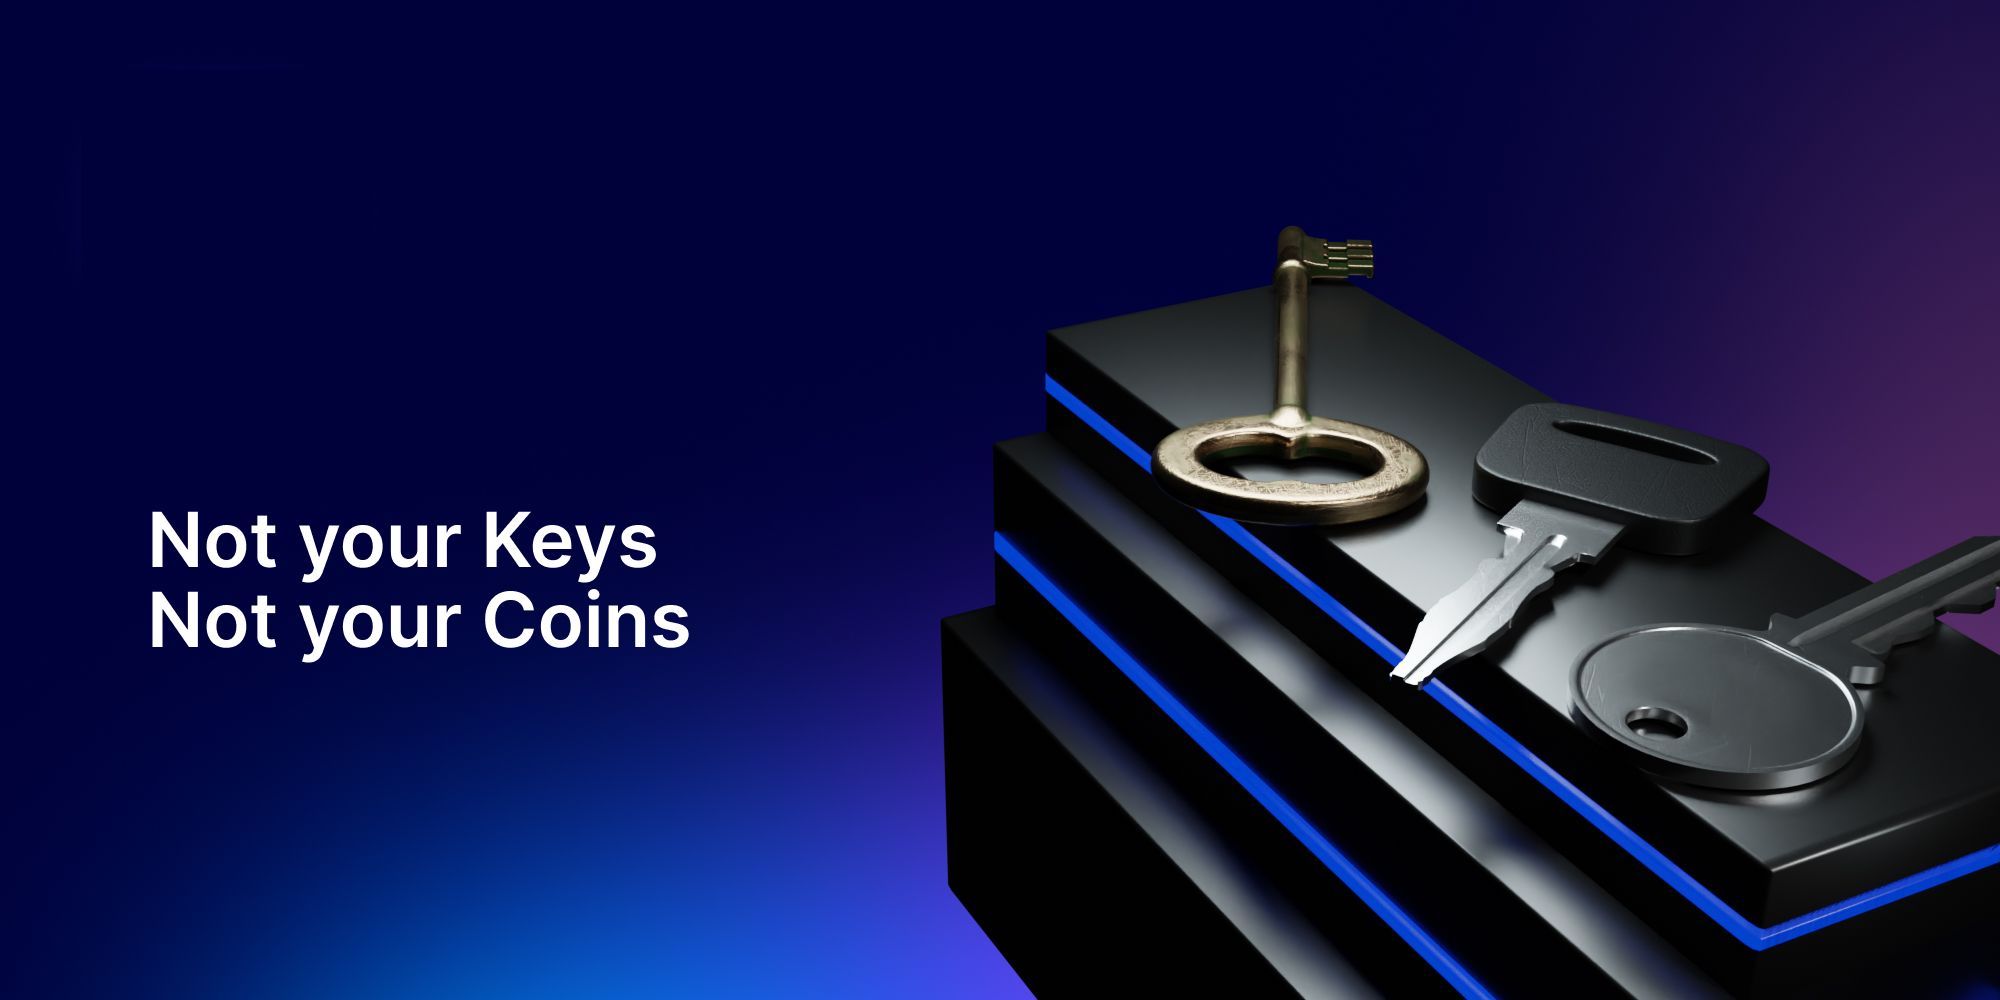 El poder detrás del lema: "Not your keys, not your cryptos" y su impacto en la cripto comunidad